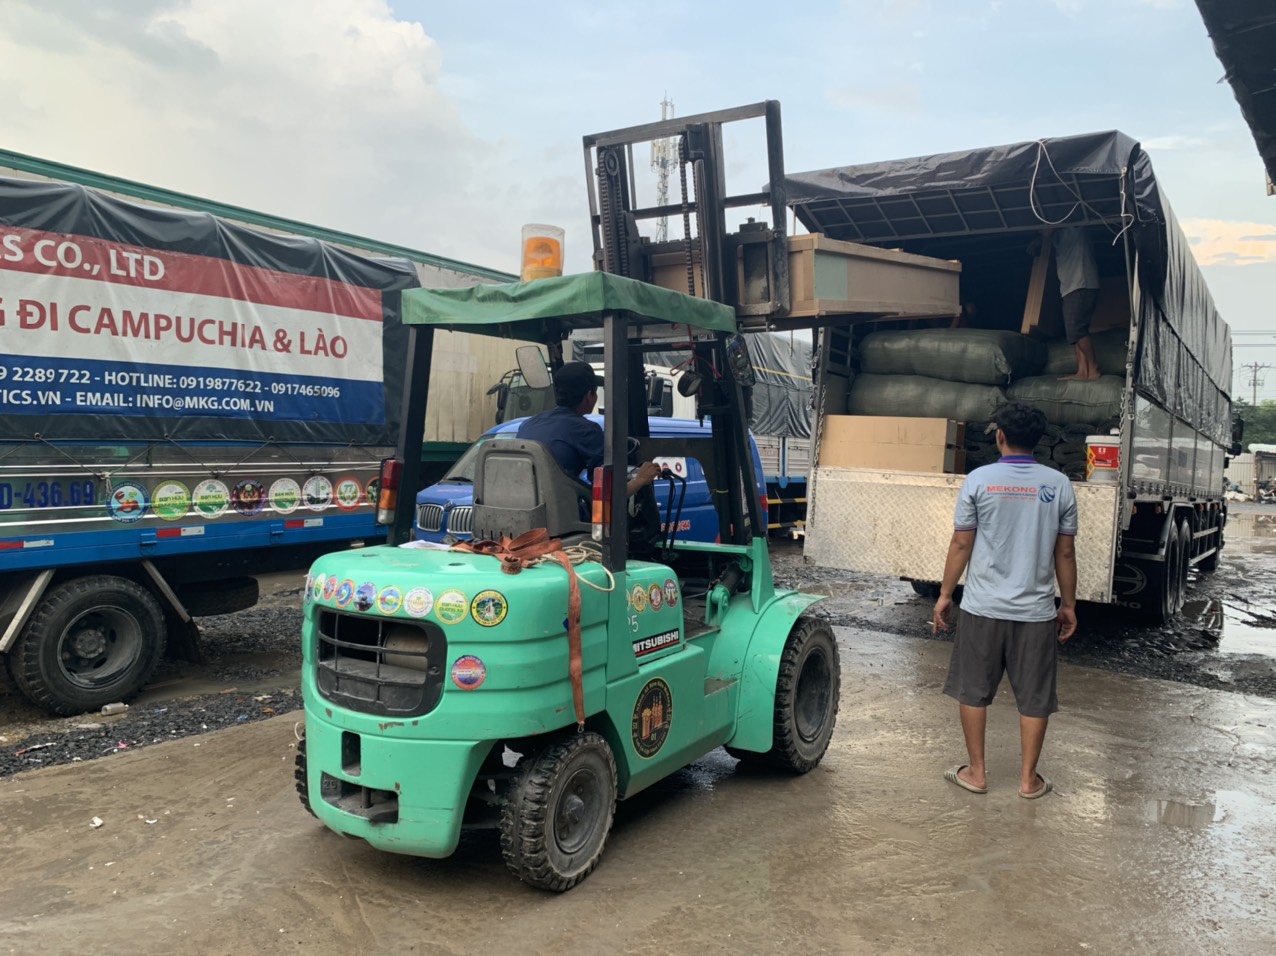 Sắp xếp hàng hóa lên xe tải chuyển đi Campuchia bằng xe nâng